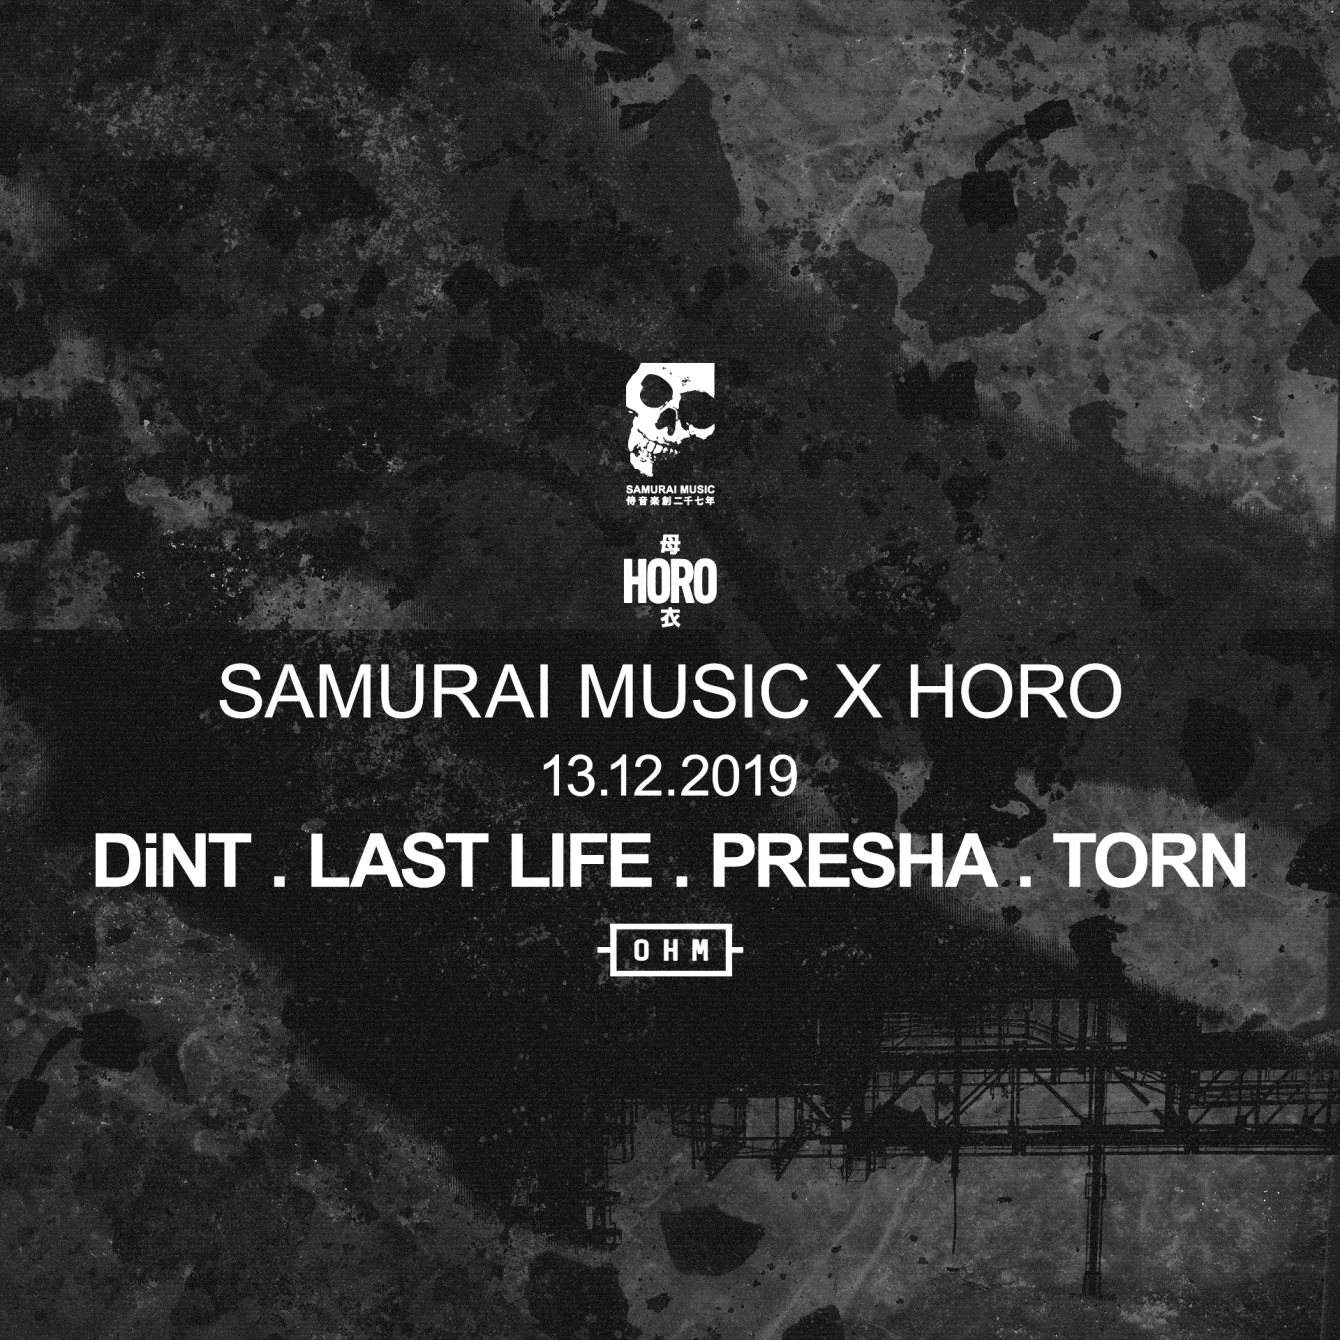 Samurai Music x Horo - フライヤー表